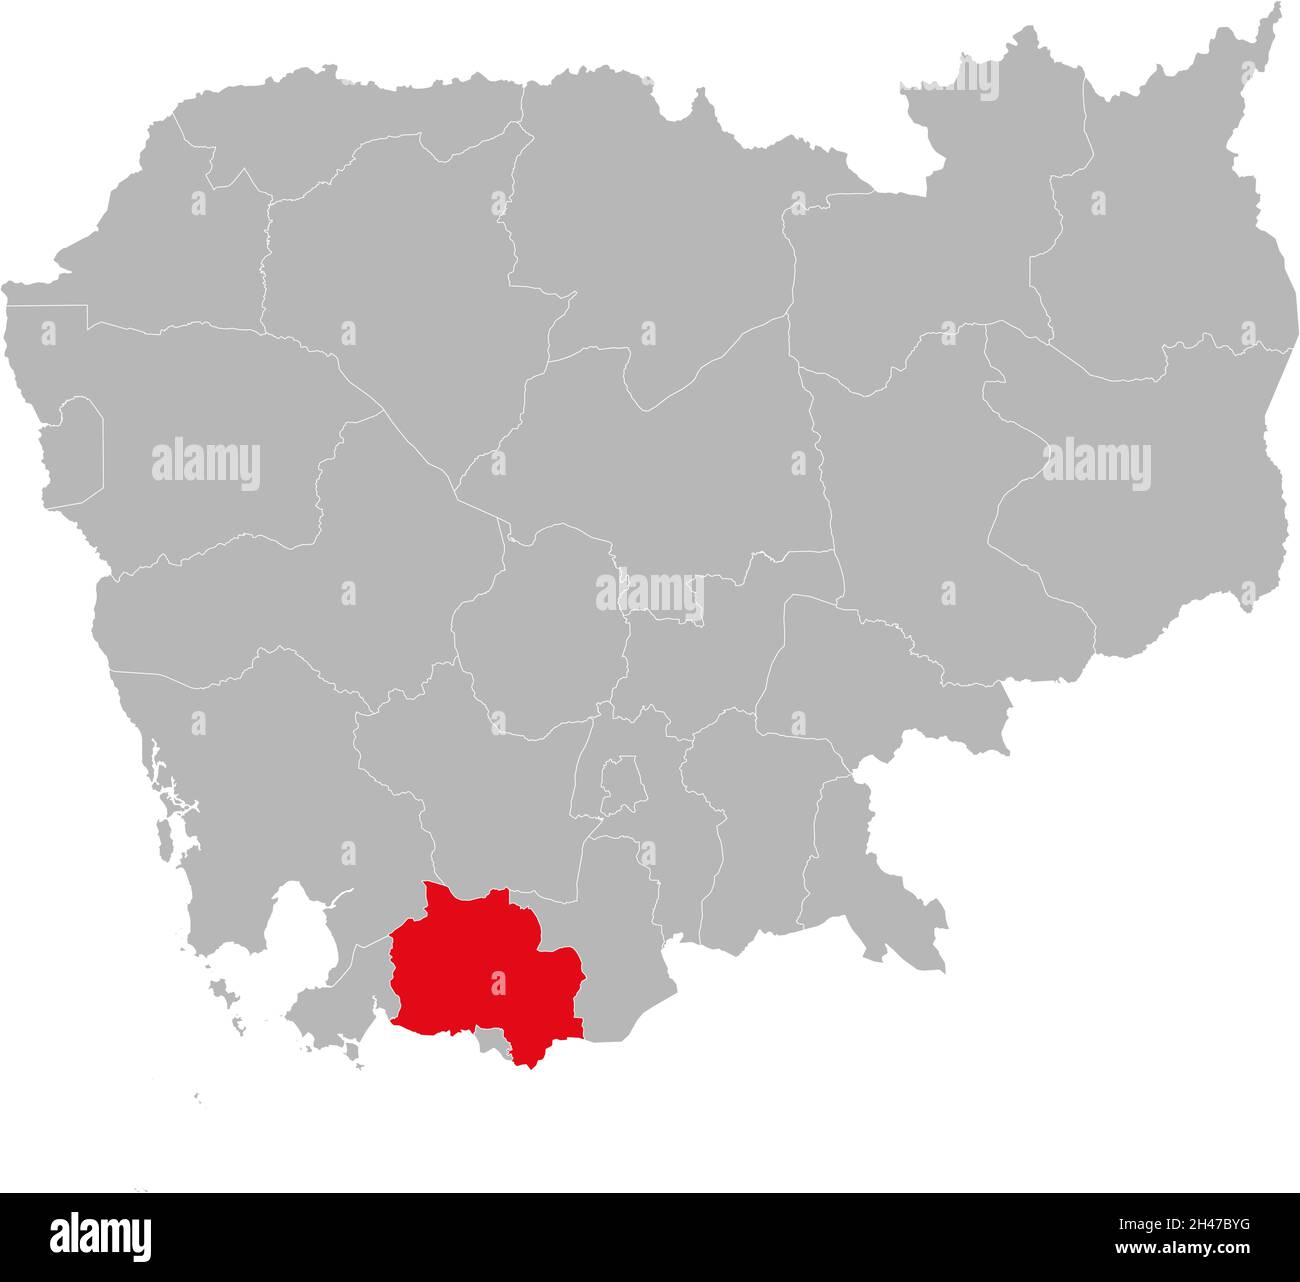 Kampot Provinz isoliert kambodscha Karte. Grauer Hintergrund. Geschäftskonzepte und -Hintergründe. Stock Vektor